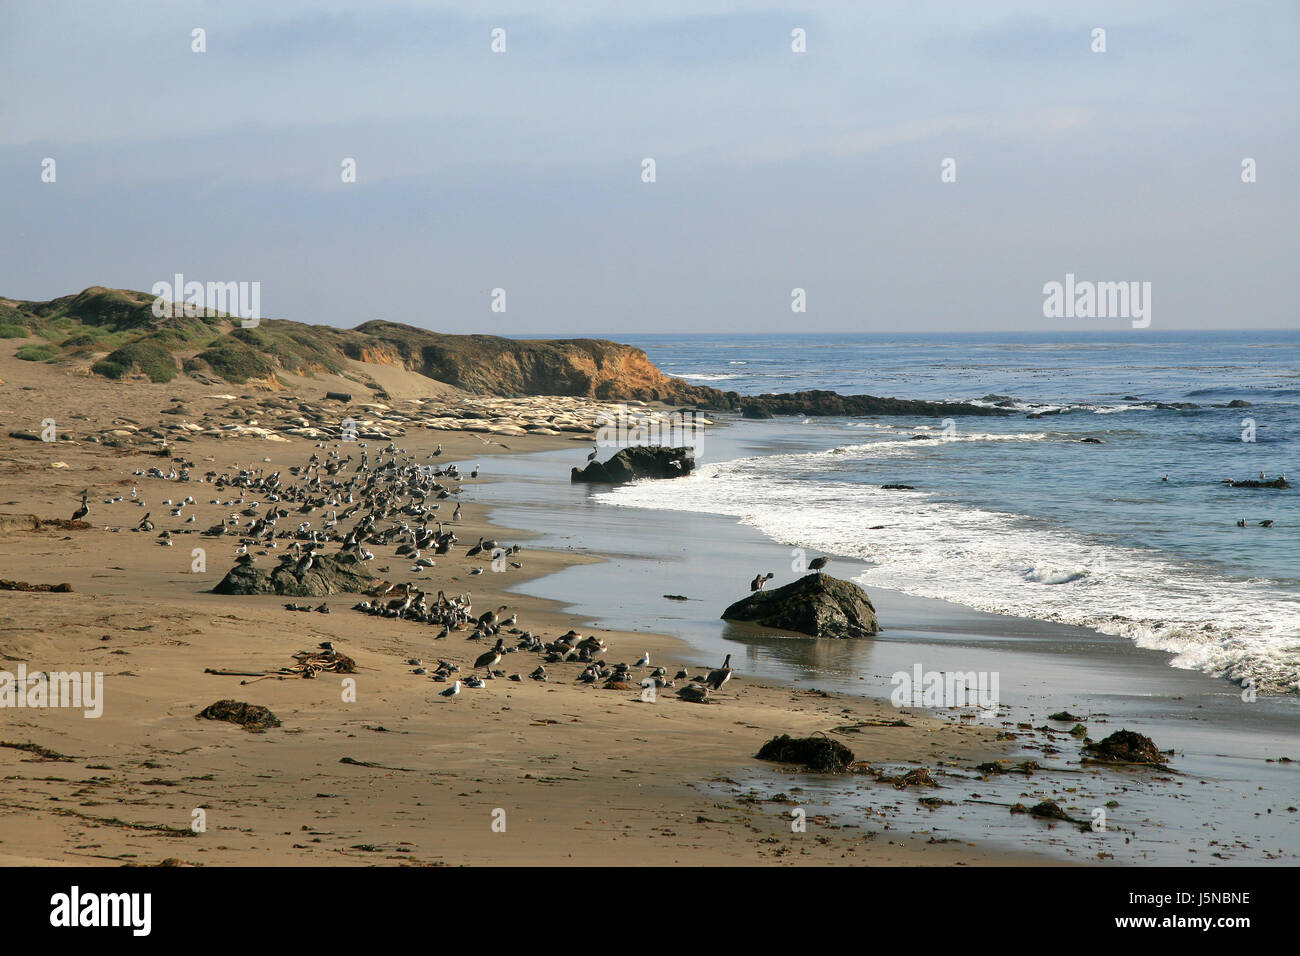 L'eau salée du Pacifique Californie mer océan eau de mer la plage d'oiseaux de la pointe Banque D'Images